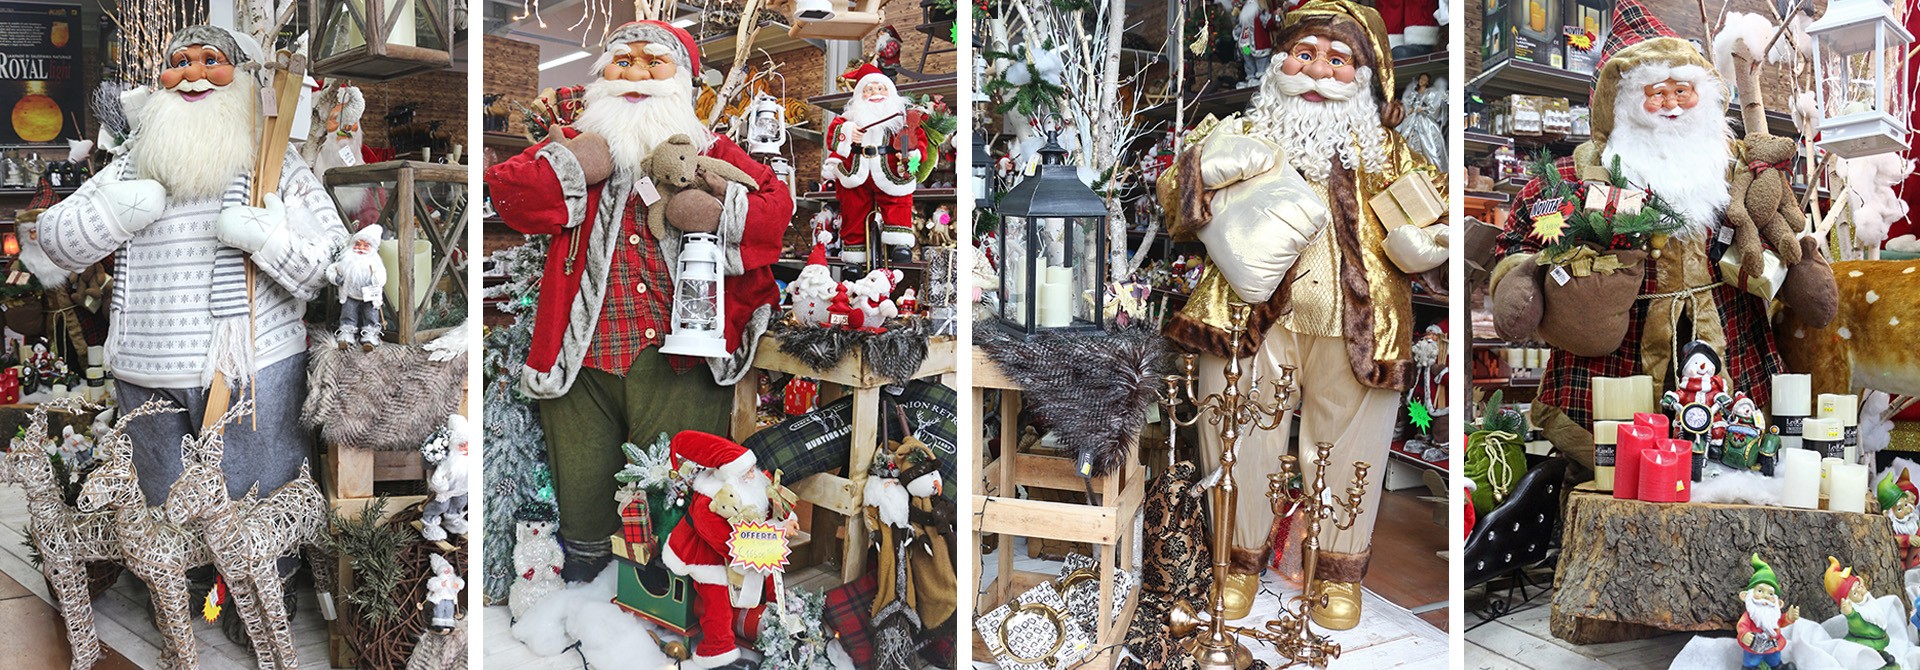 Babbi Natale, decorazioni natalizie, alberi natalizi, regali ed addobbi natalizi.